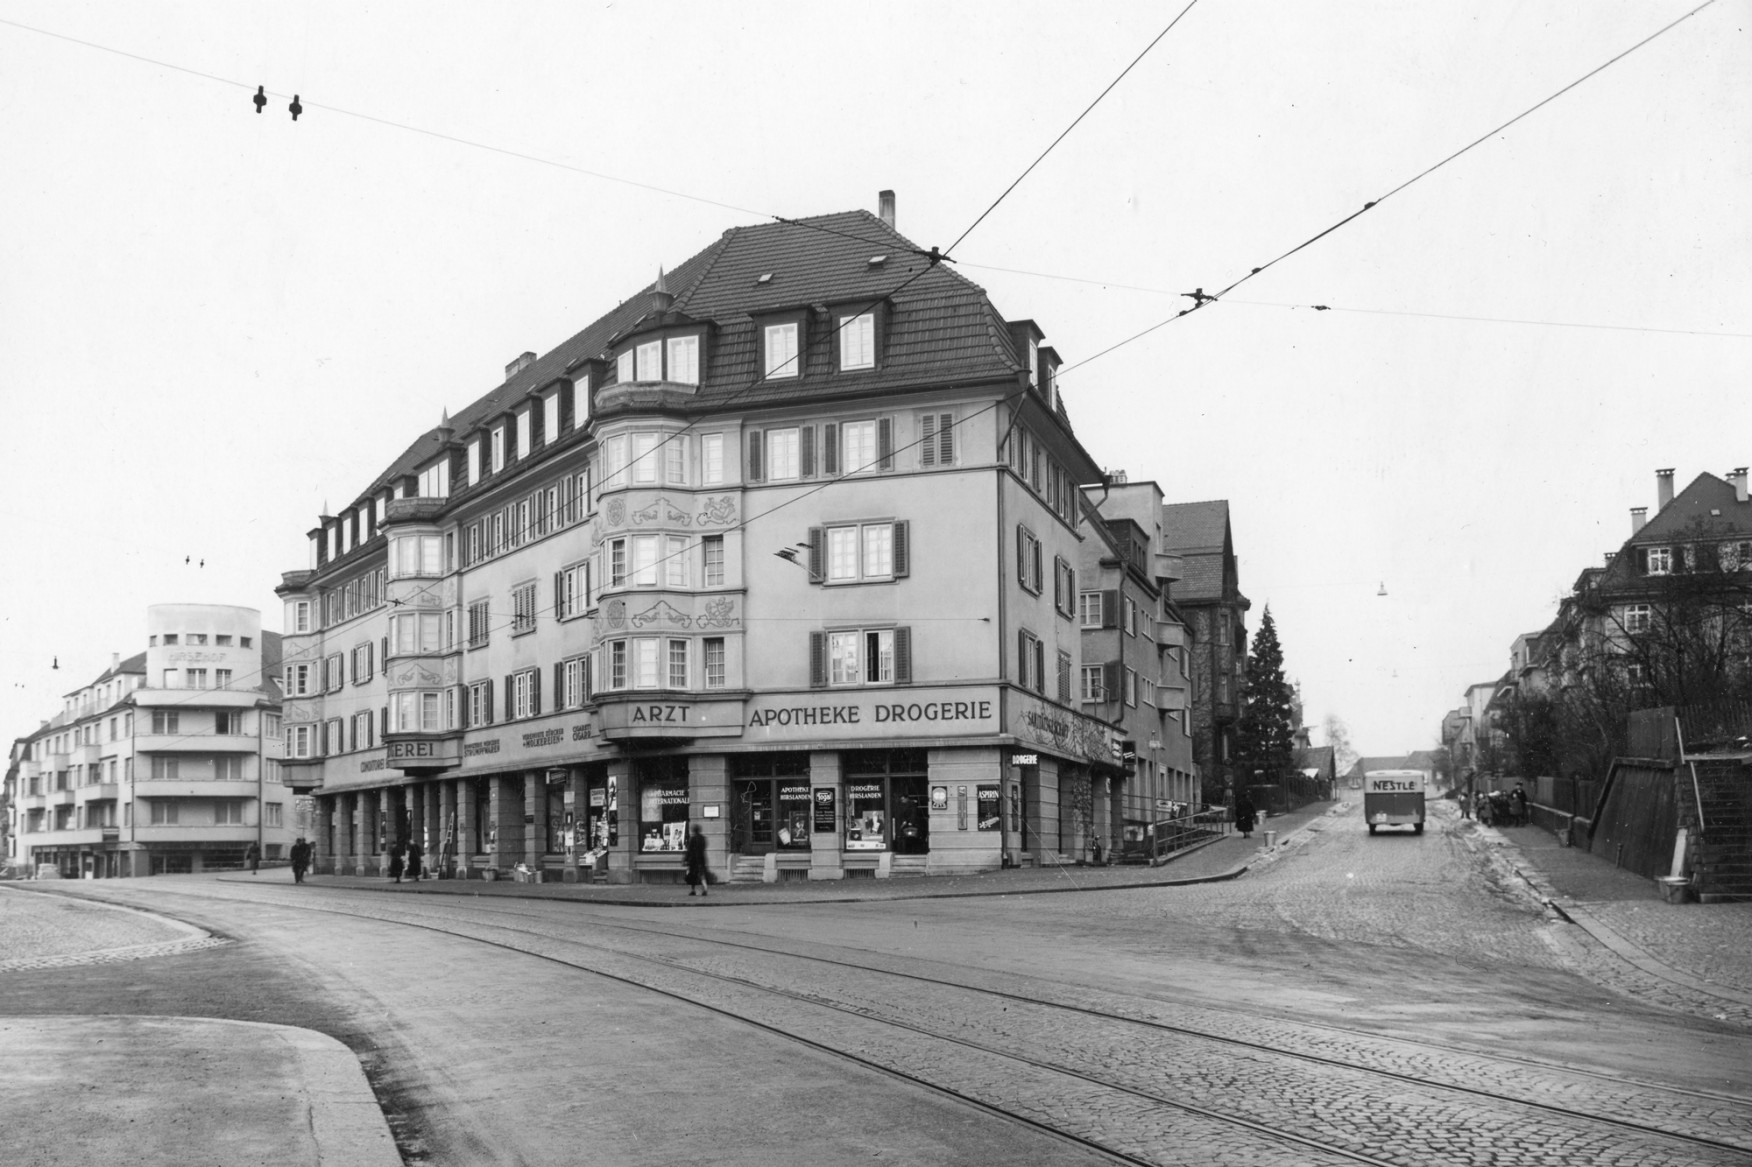 Archivaufnahme der Strassenansicht Forchstrasse 193, Freiestrasse 221 um 1939